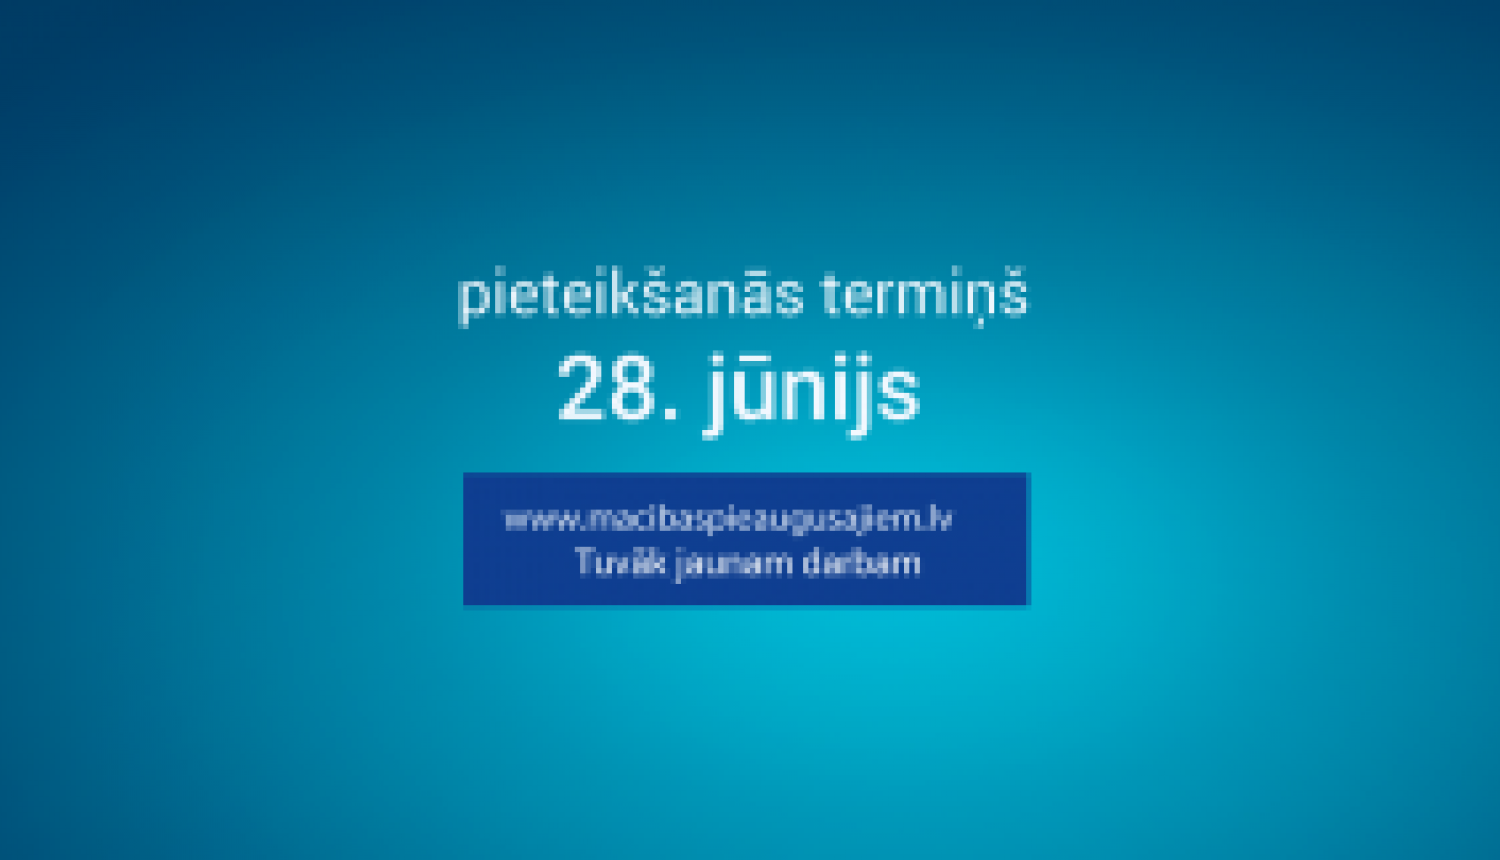 Mācībām pieaugušajiem visā Latvijā var pieteikties vēl līdz 28. jūnijam